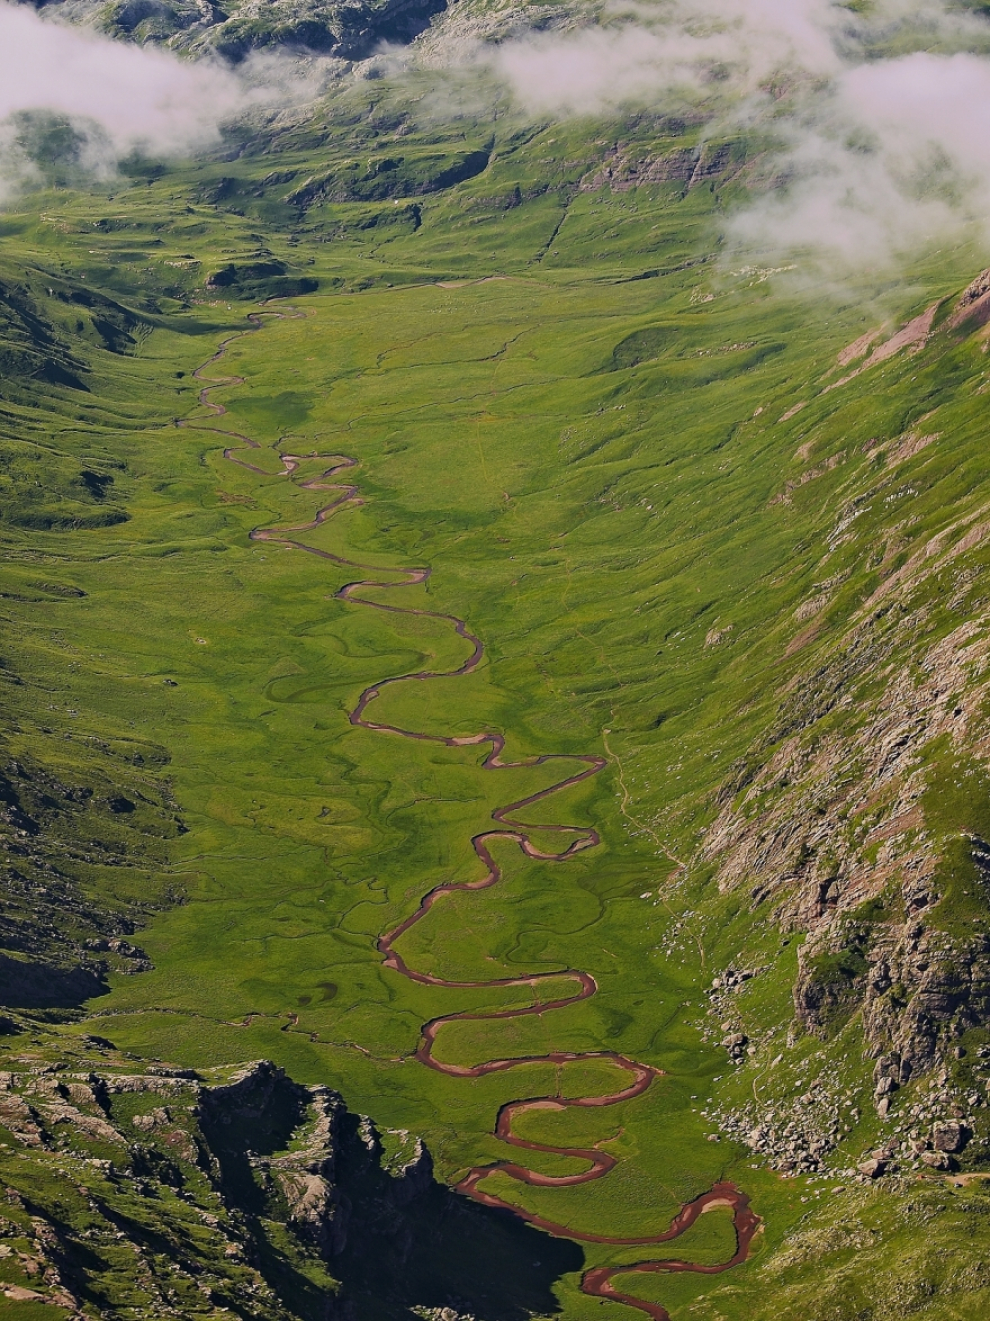 Uno de los rincones más hermosos del Pirineo, aguas cristalinas que serpentean formando curiosos meandros.